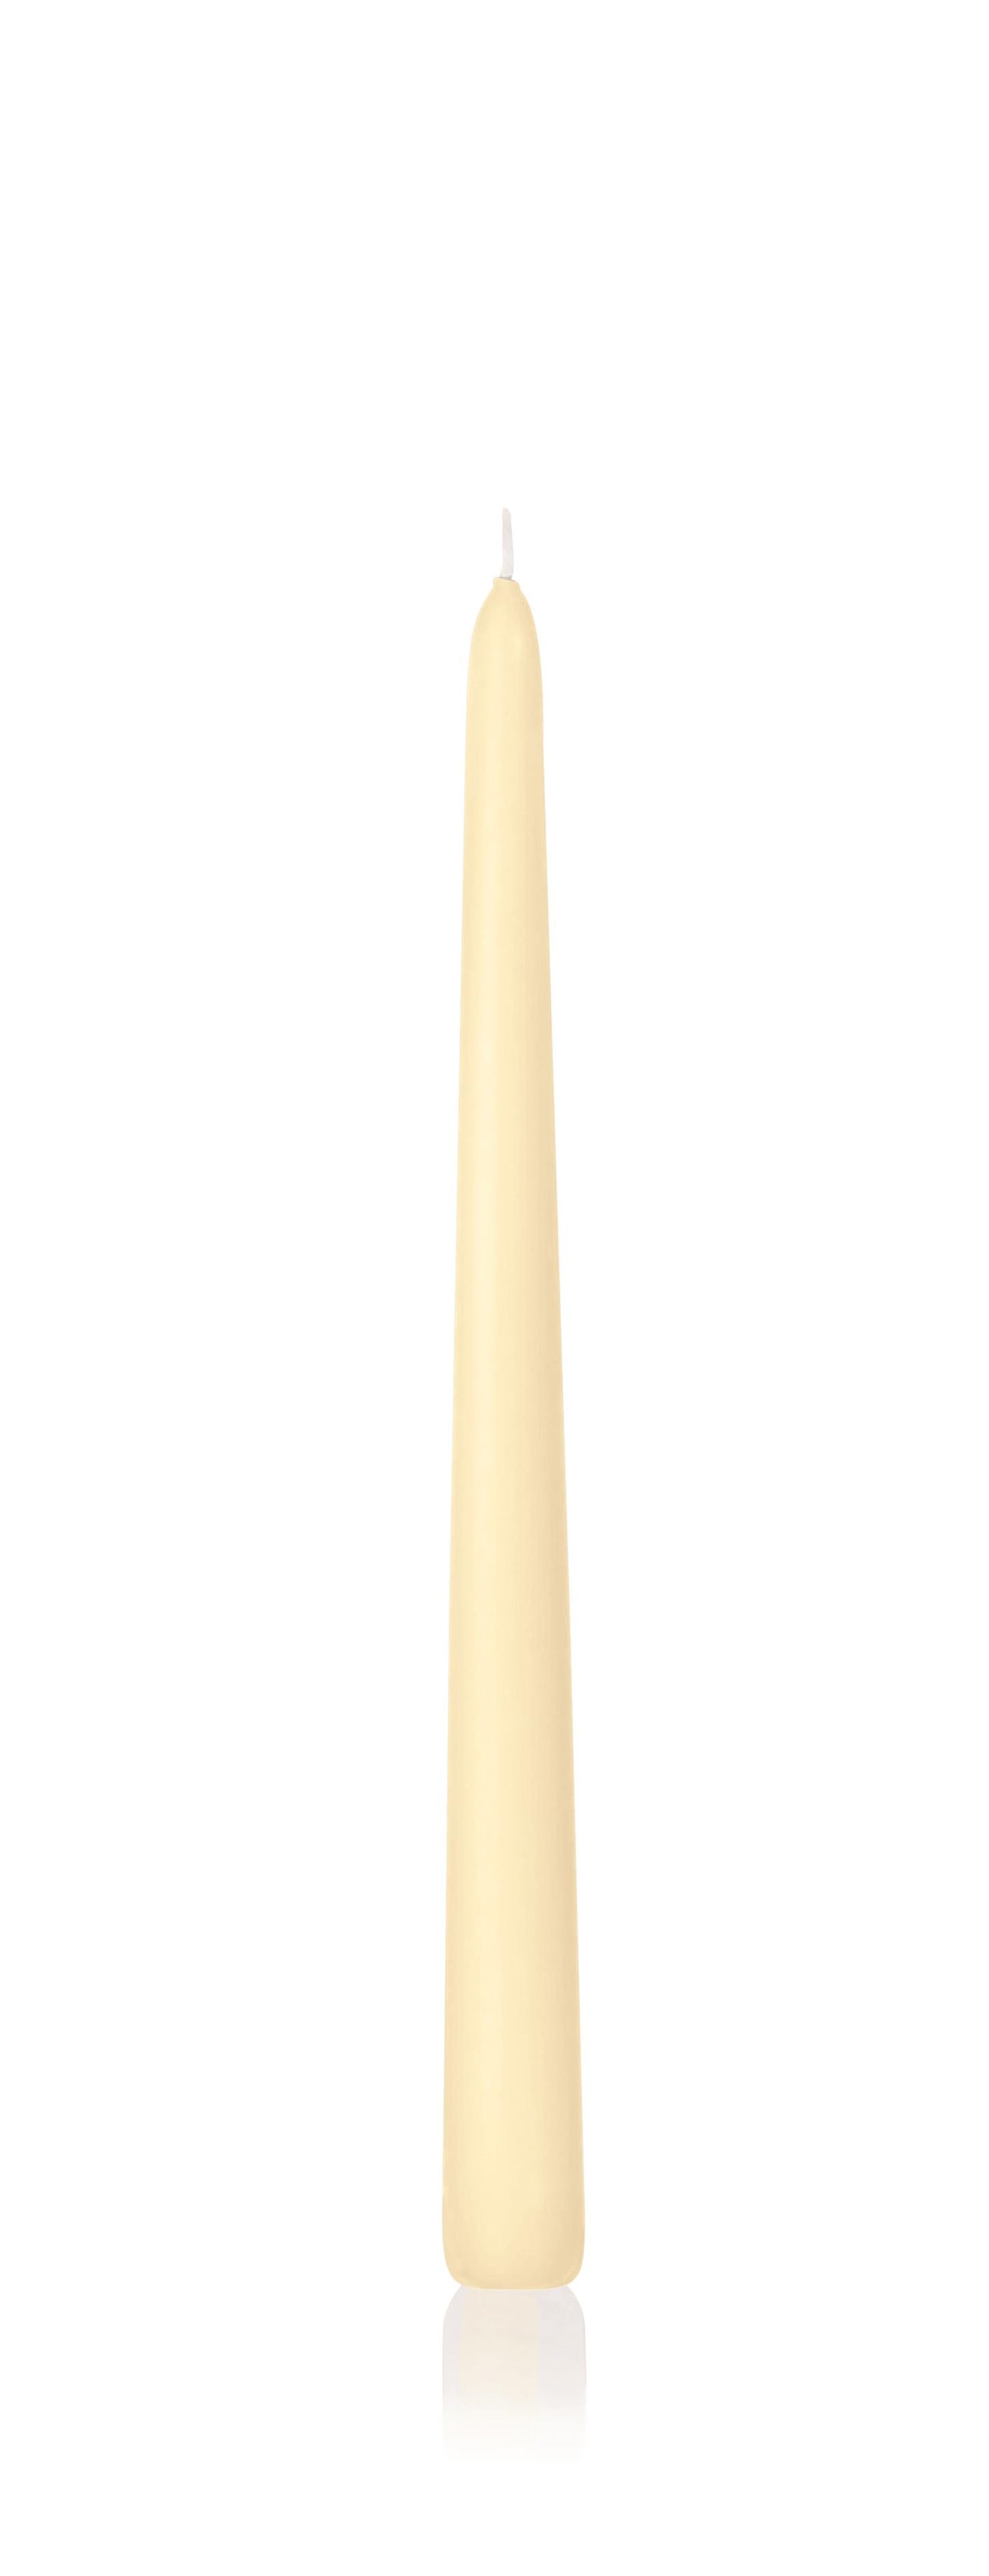 6x Konische Kerzen in Cellophan 300/25mm (Bisquit)